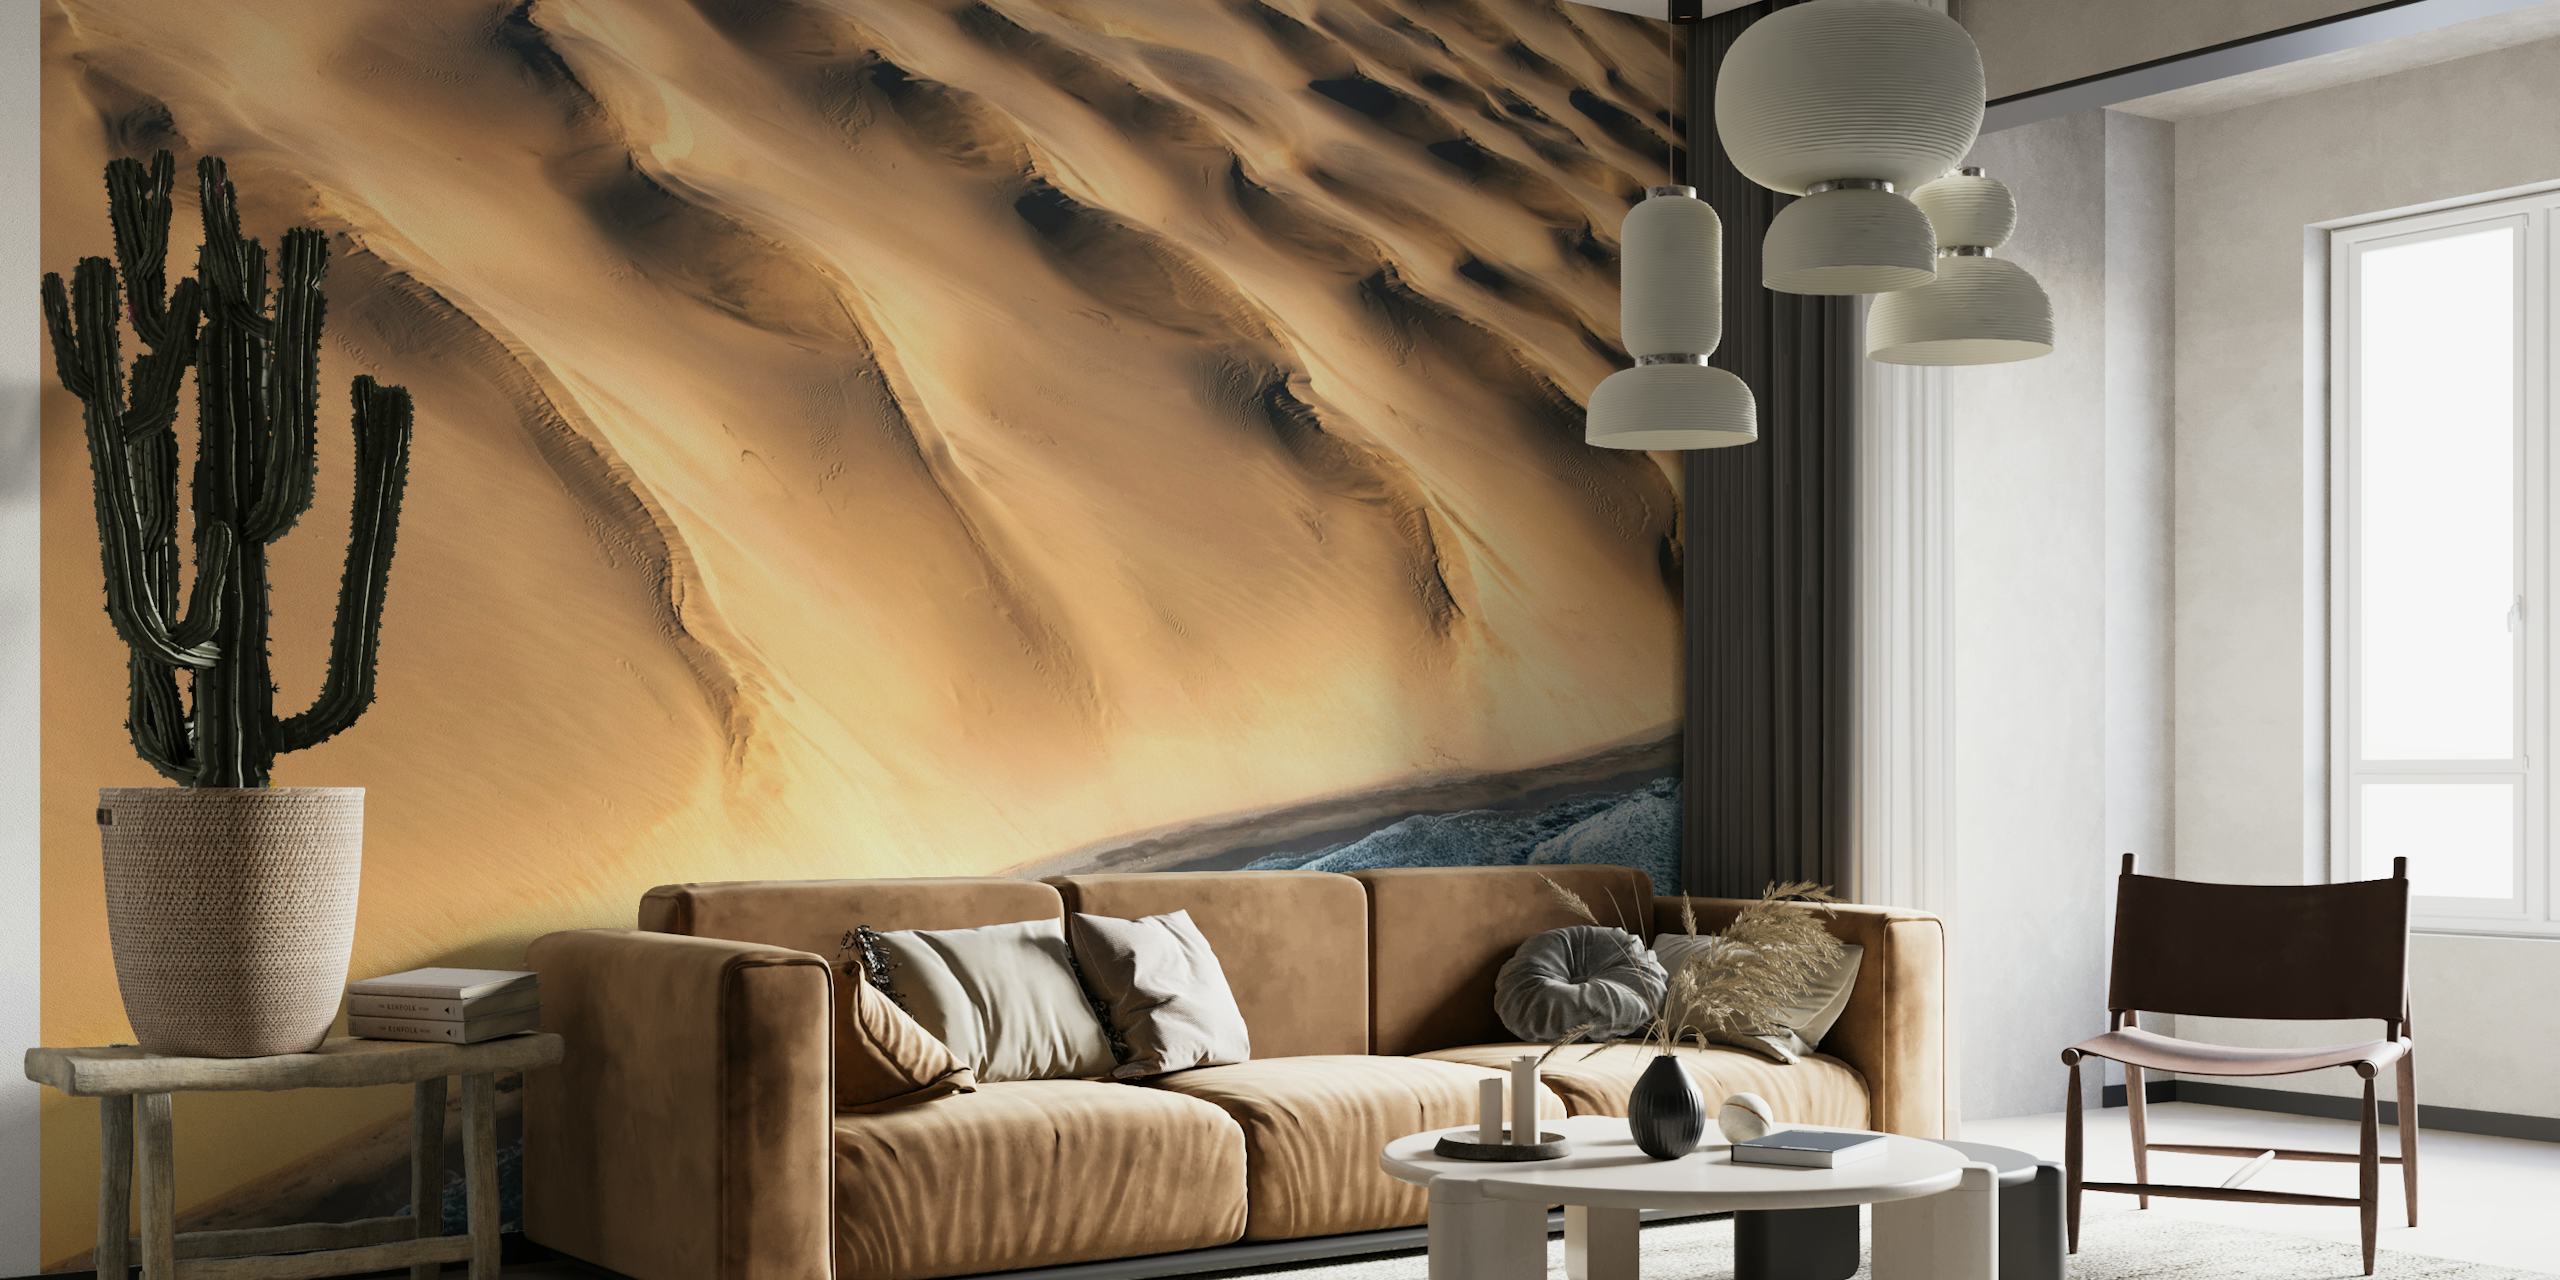 Fotomural del desierto de Namib con dunas de arena dorada y motivos de sombras